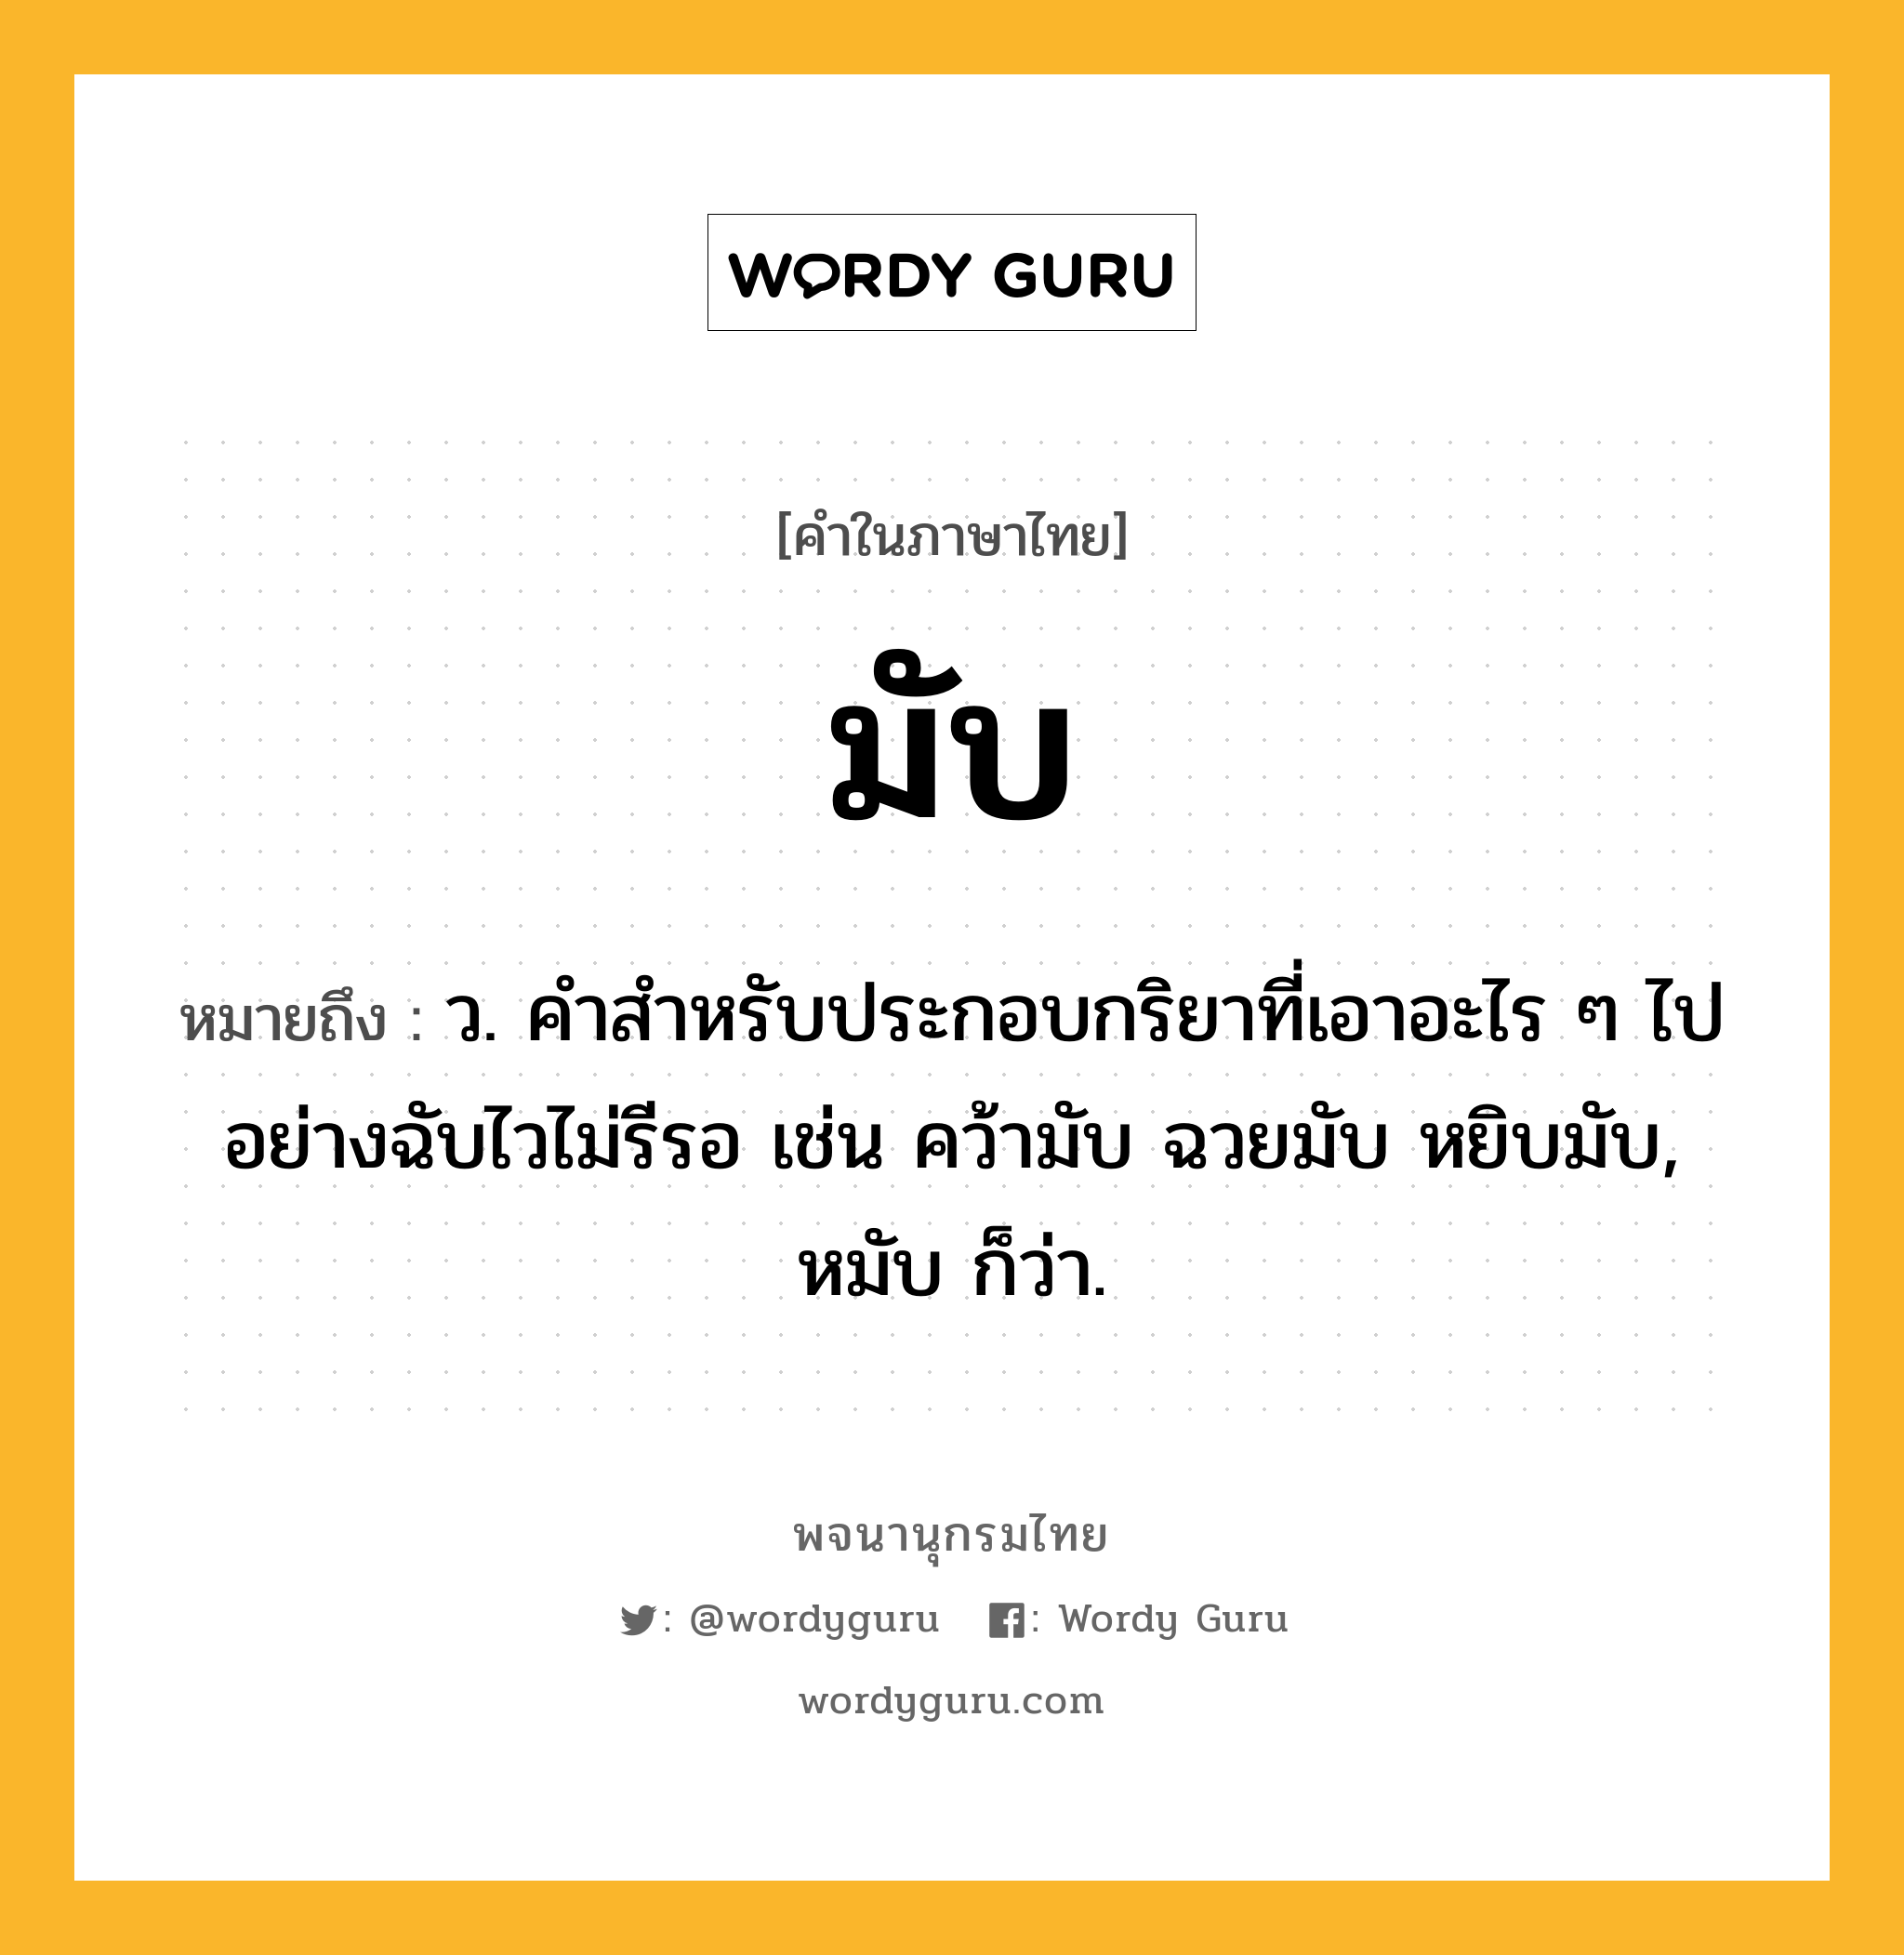 มับ หมายถึงอะไร?, คำในภาษาไทย มับ หมายถึง ว. คําสําหรับประกอบกริยาที่เอาอะไร ๆ ไปอย่างฉับไวไม่รีรอ เช่น คว้ามับ ฉวยมับ หยิบมับ, หมับ ก็ว่า.